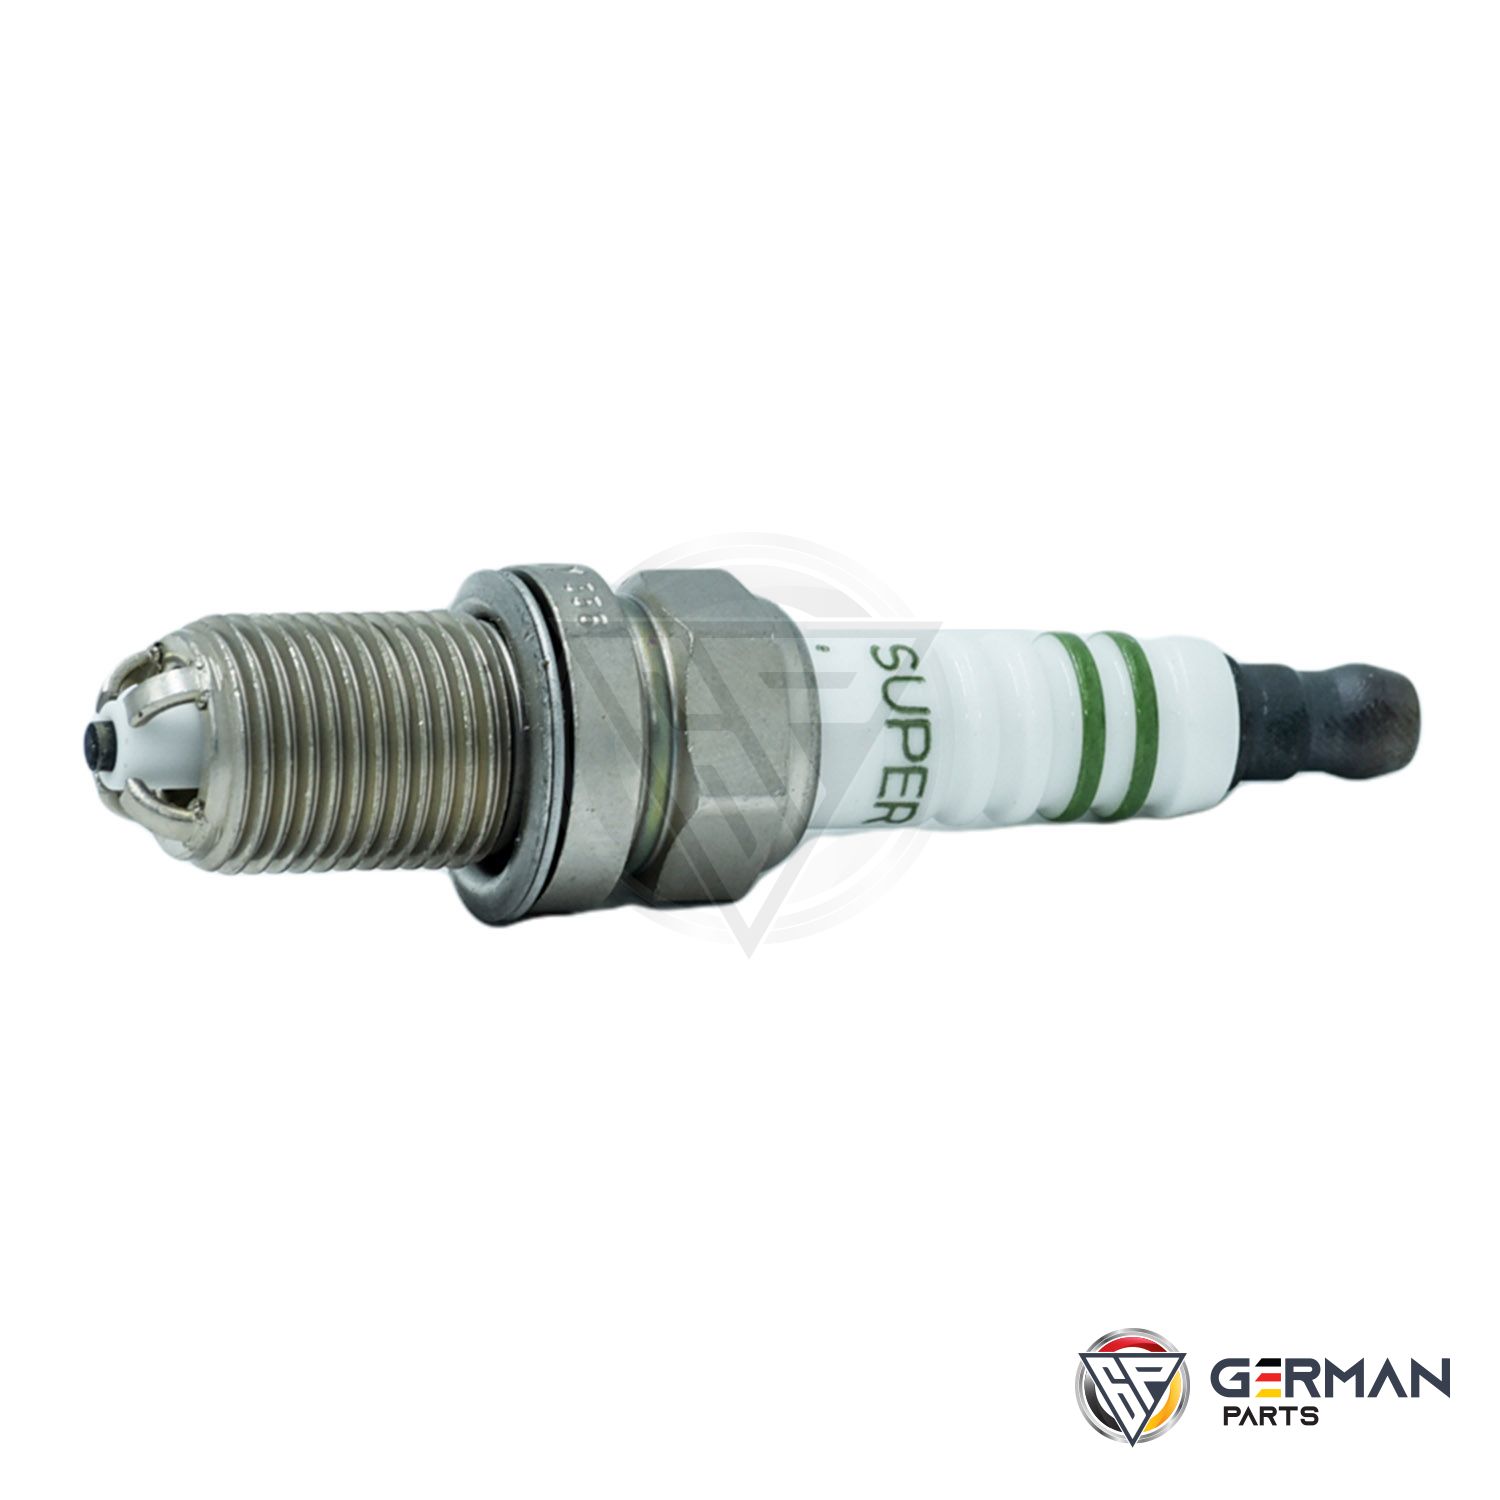 Buy Porsche Spark Plug 99917022390 - German Parts